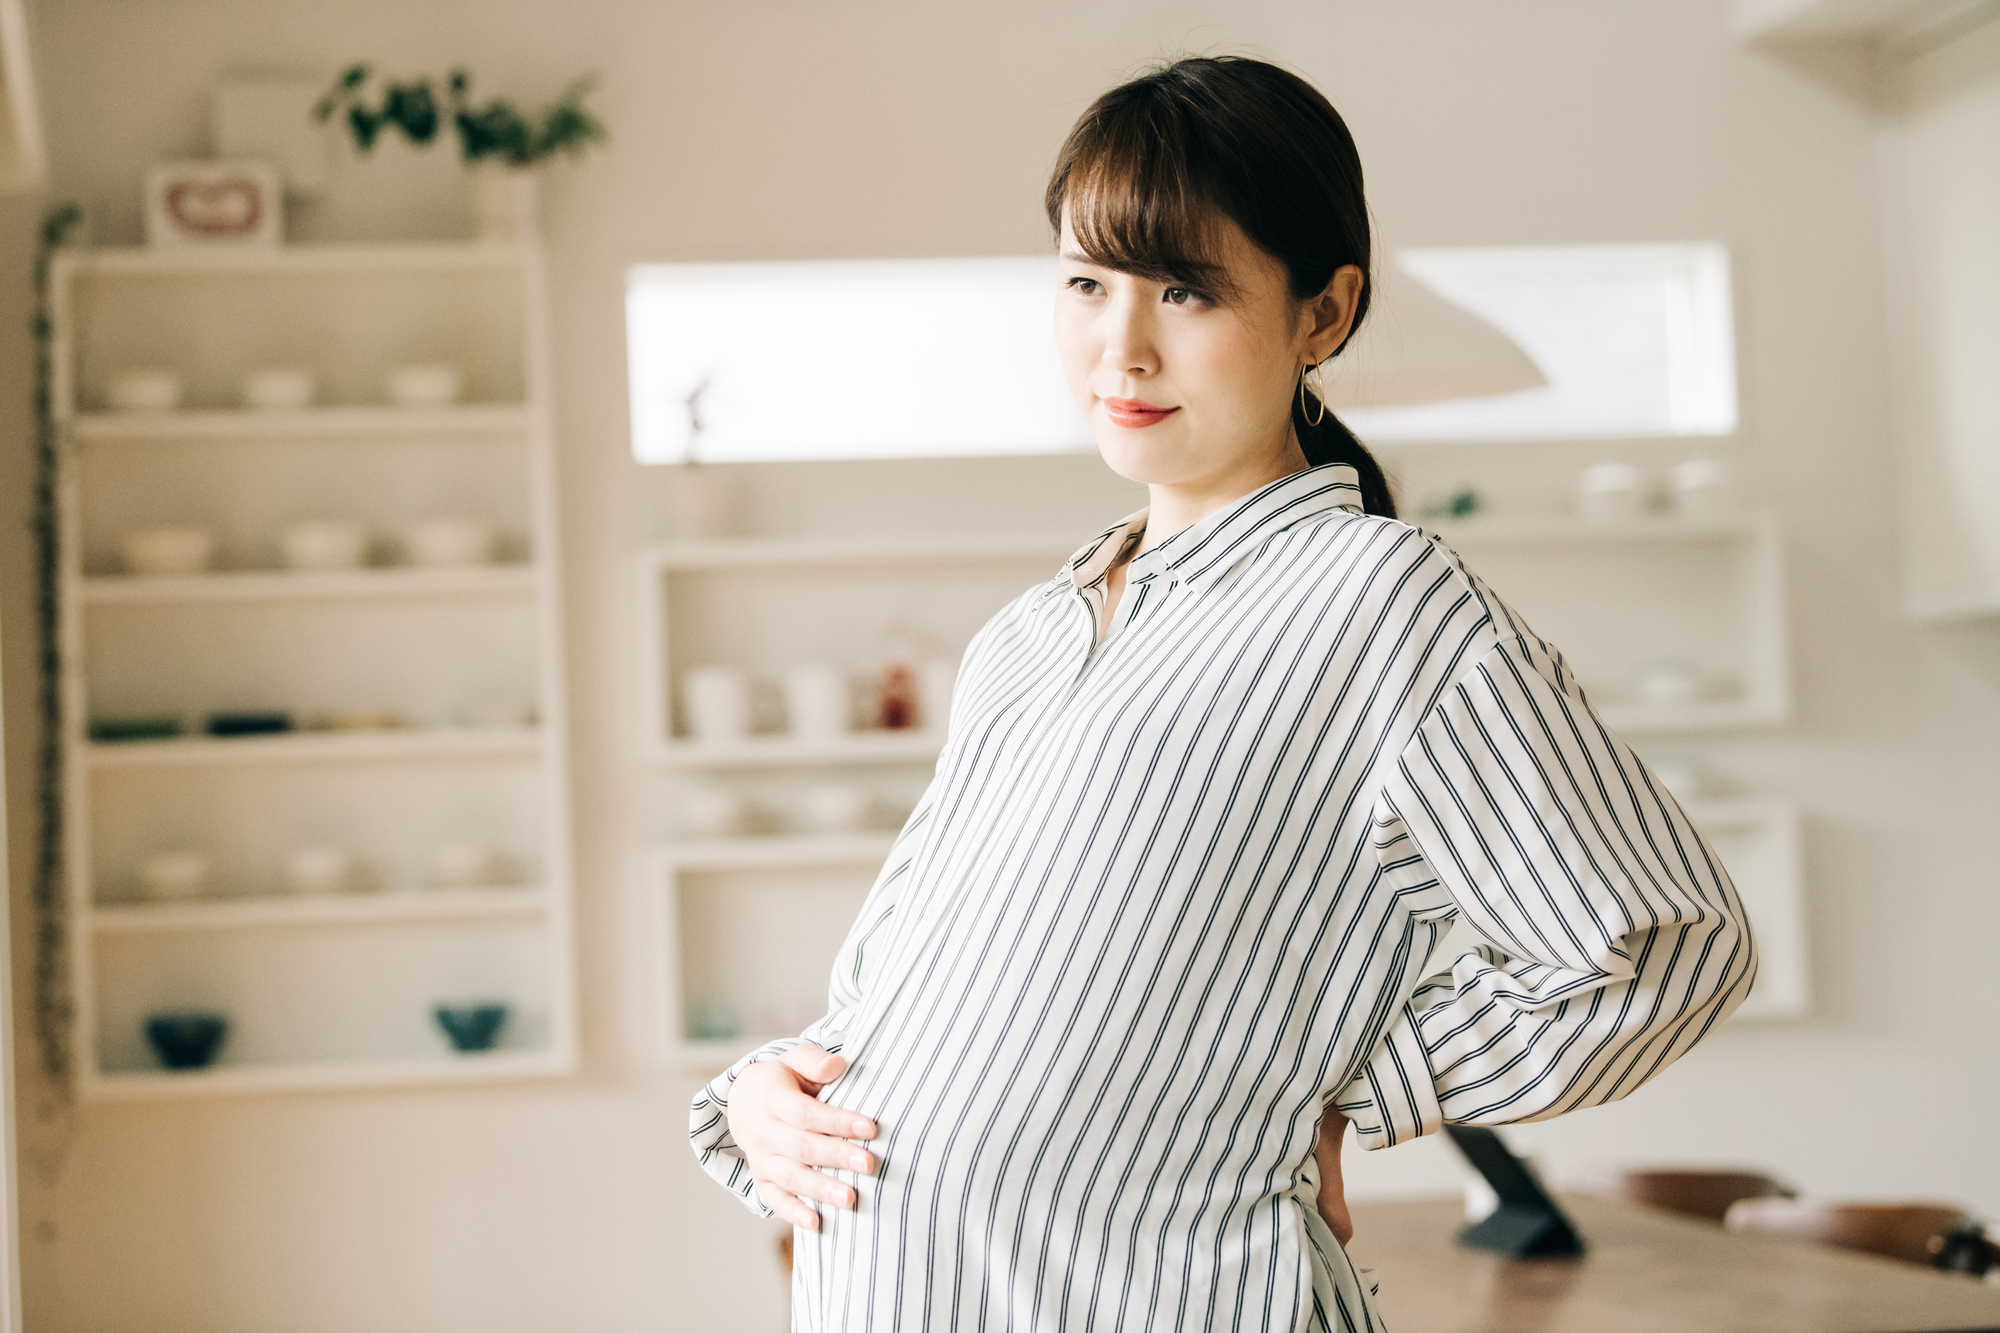 8 nguy cơ tiềm ẩn bà bầu nhất định phải chú ý trước và sau khi mang thai: Giúp phòng ngừa sảy thai và các biến chứng nguy hiểm - Ảnh 2.